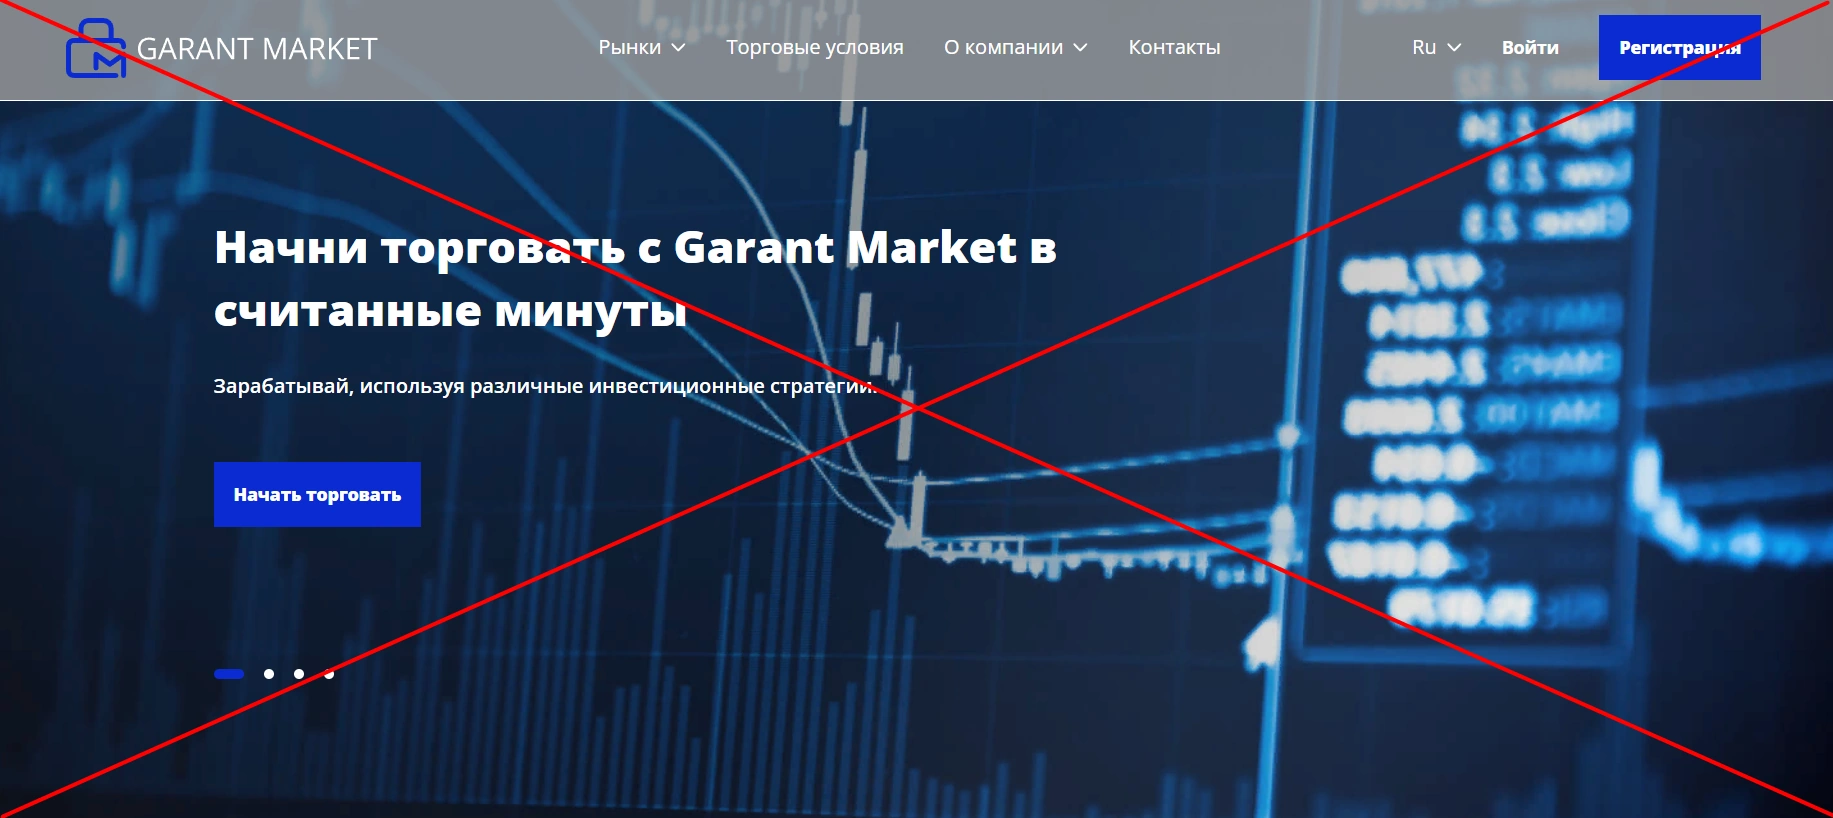 Garant Market отзывы о компании - лохотрон!